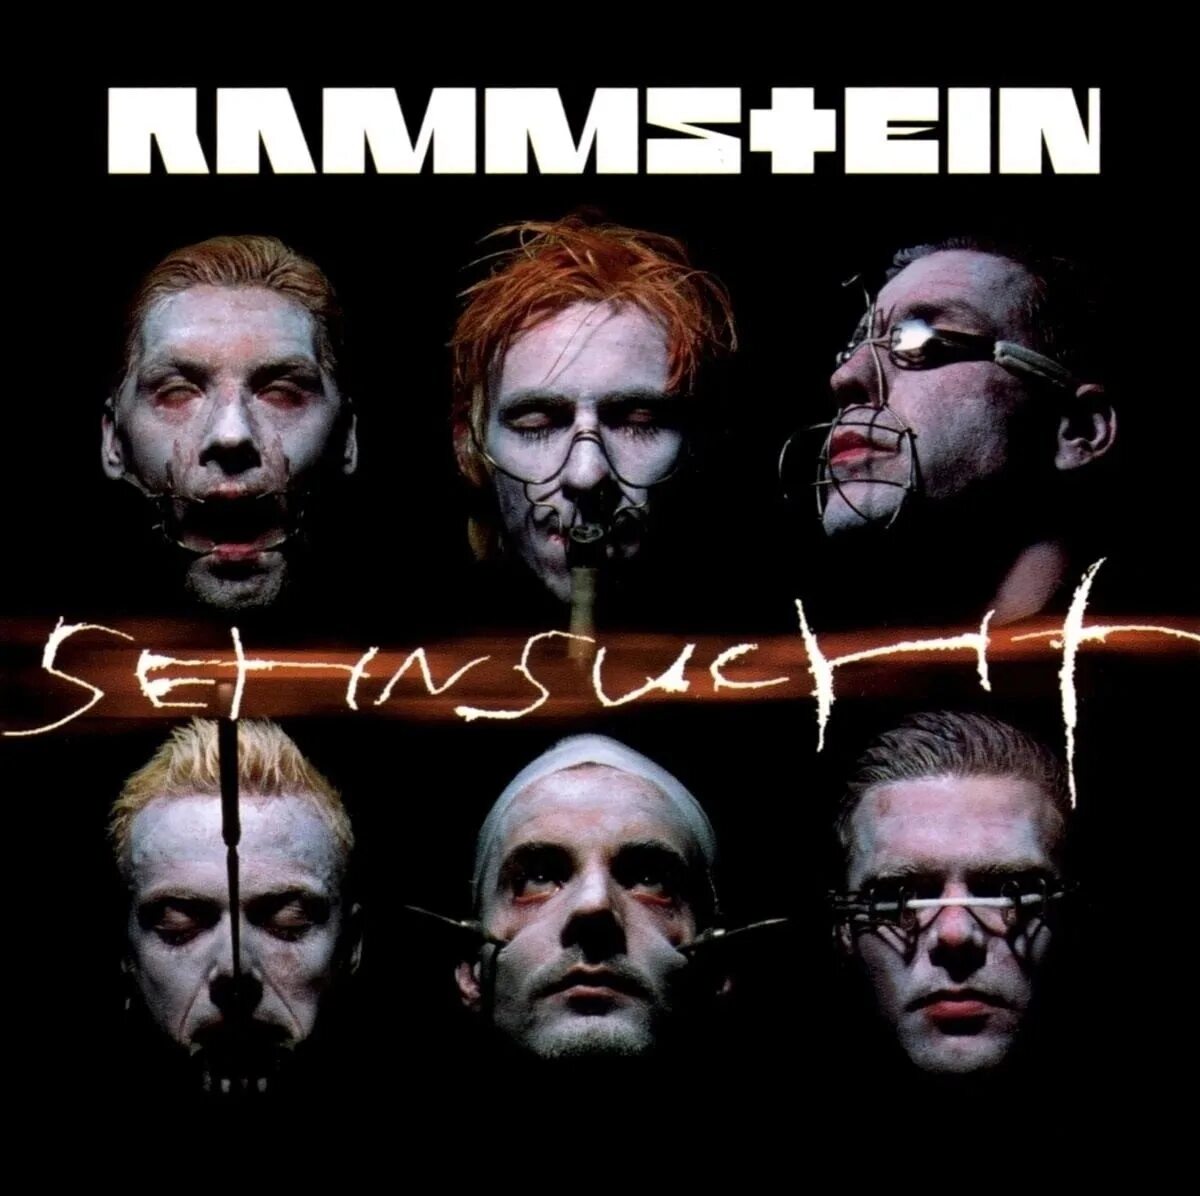 Das ist rammstein. Rammstein обложка. Rammstein 1997 обложки альбомов. Обложка альбома рамштайн Sehnsucht.